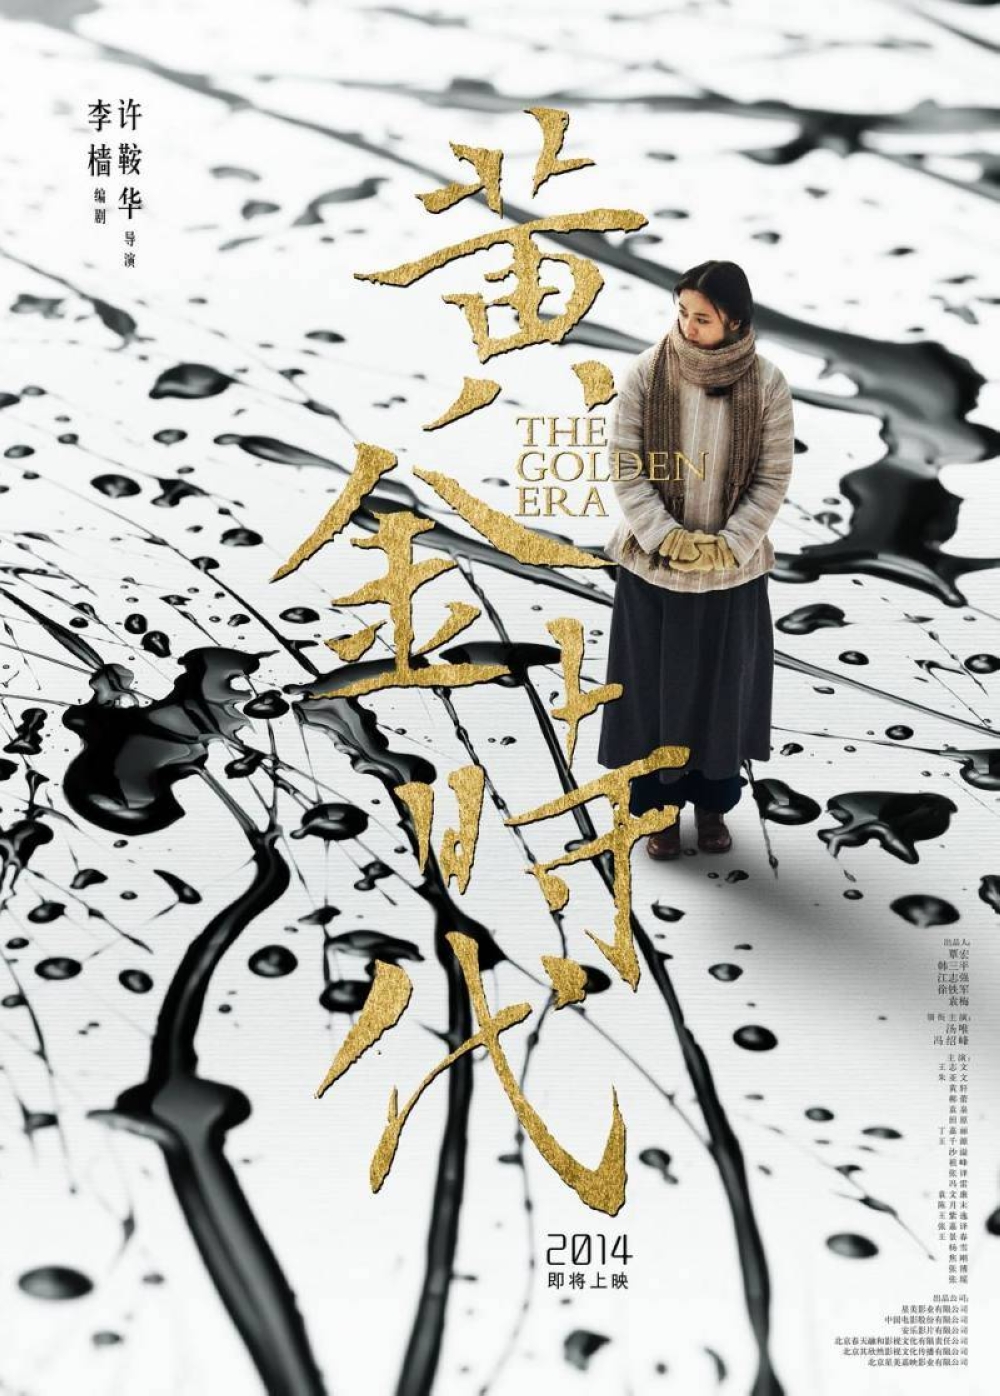 优设名人榜第1期中国电影海报设计第一人黄海